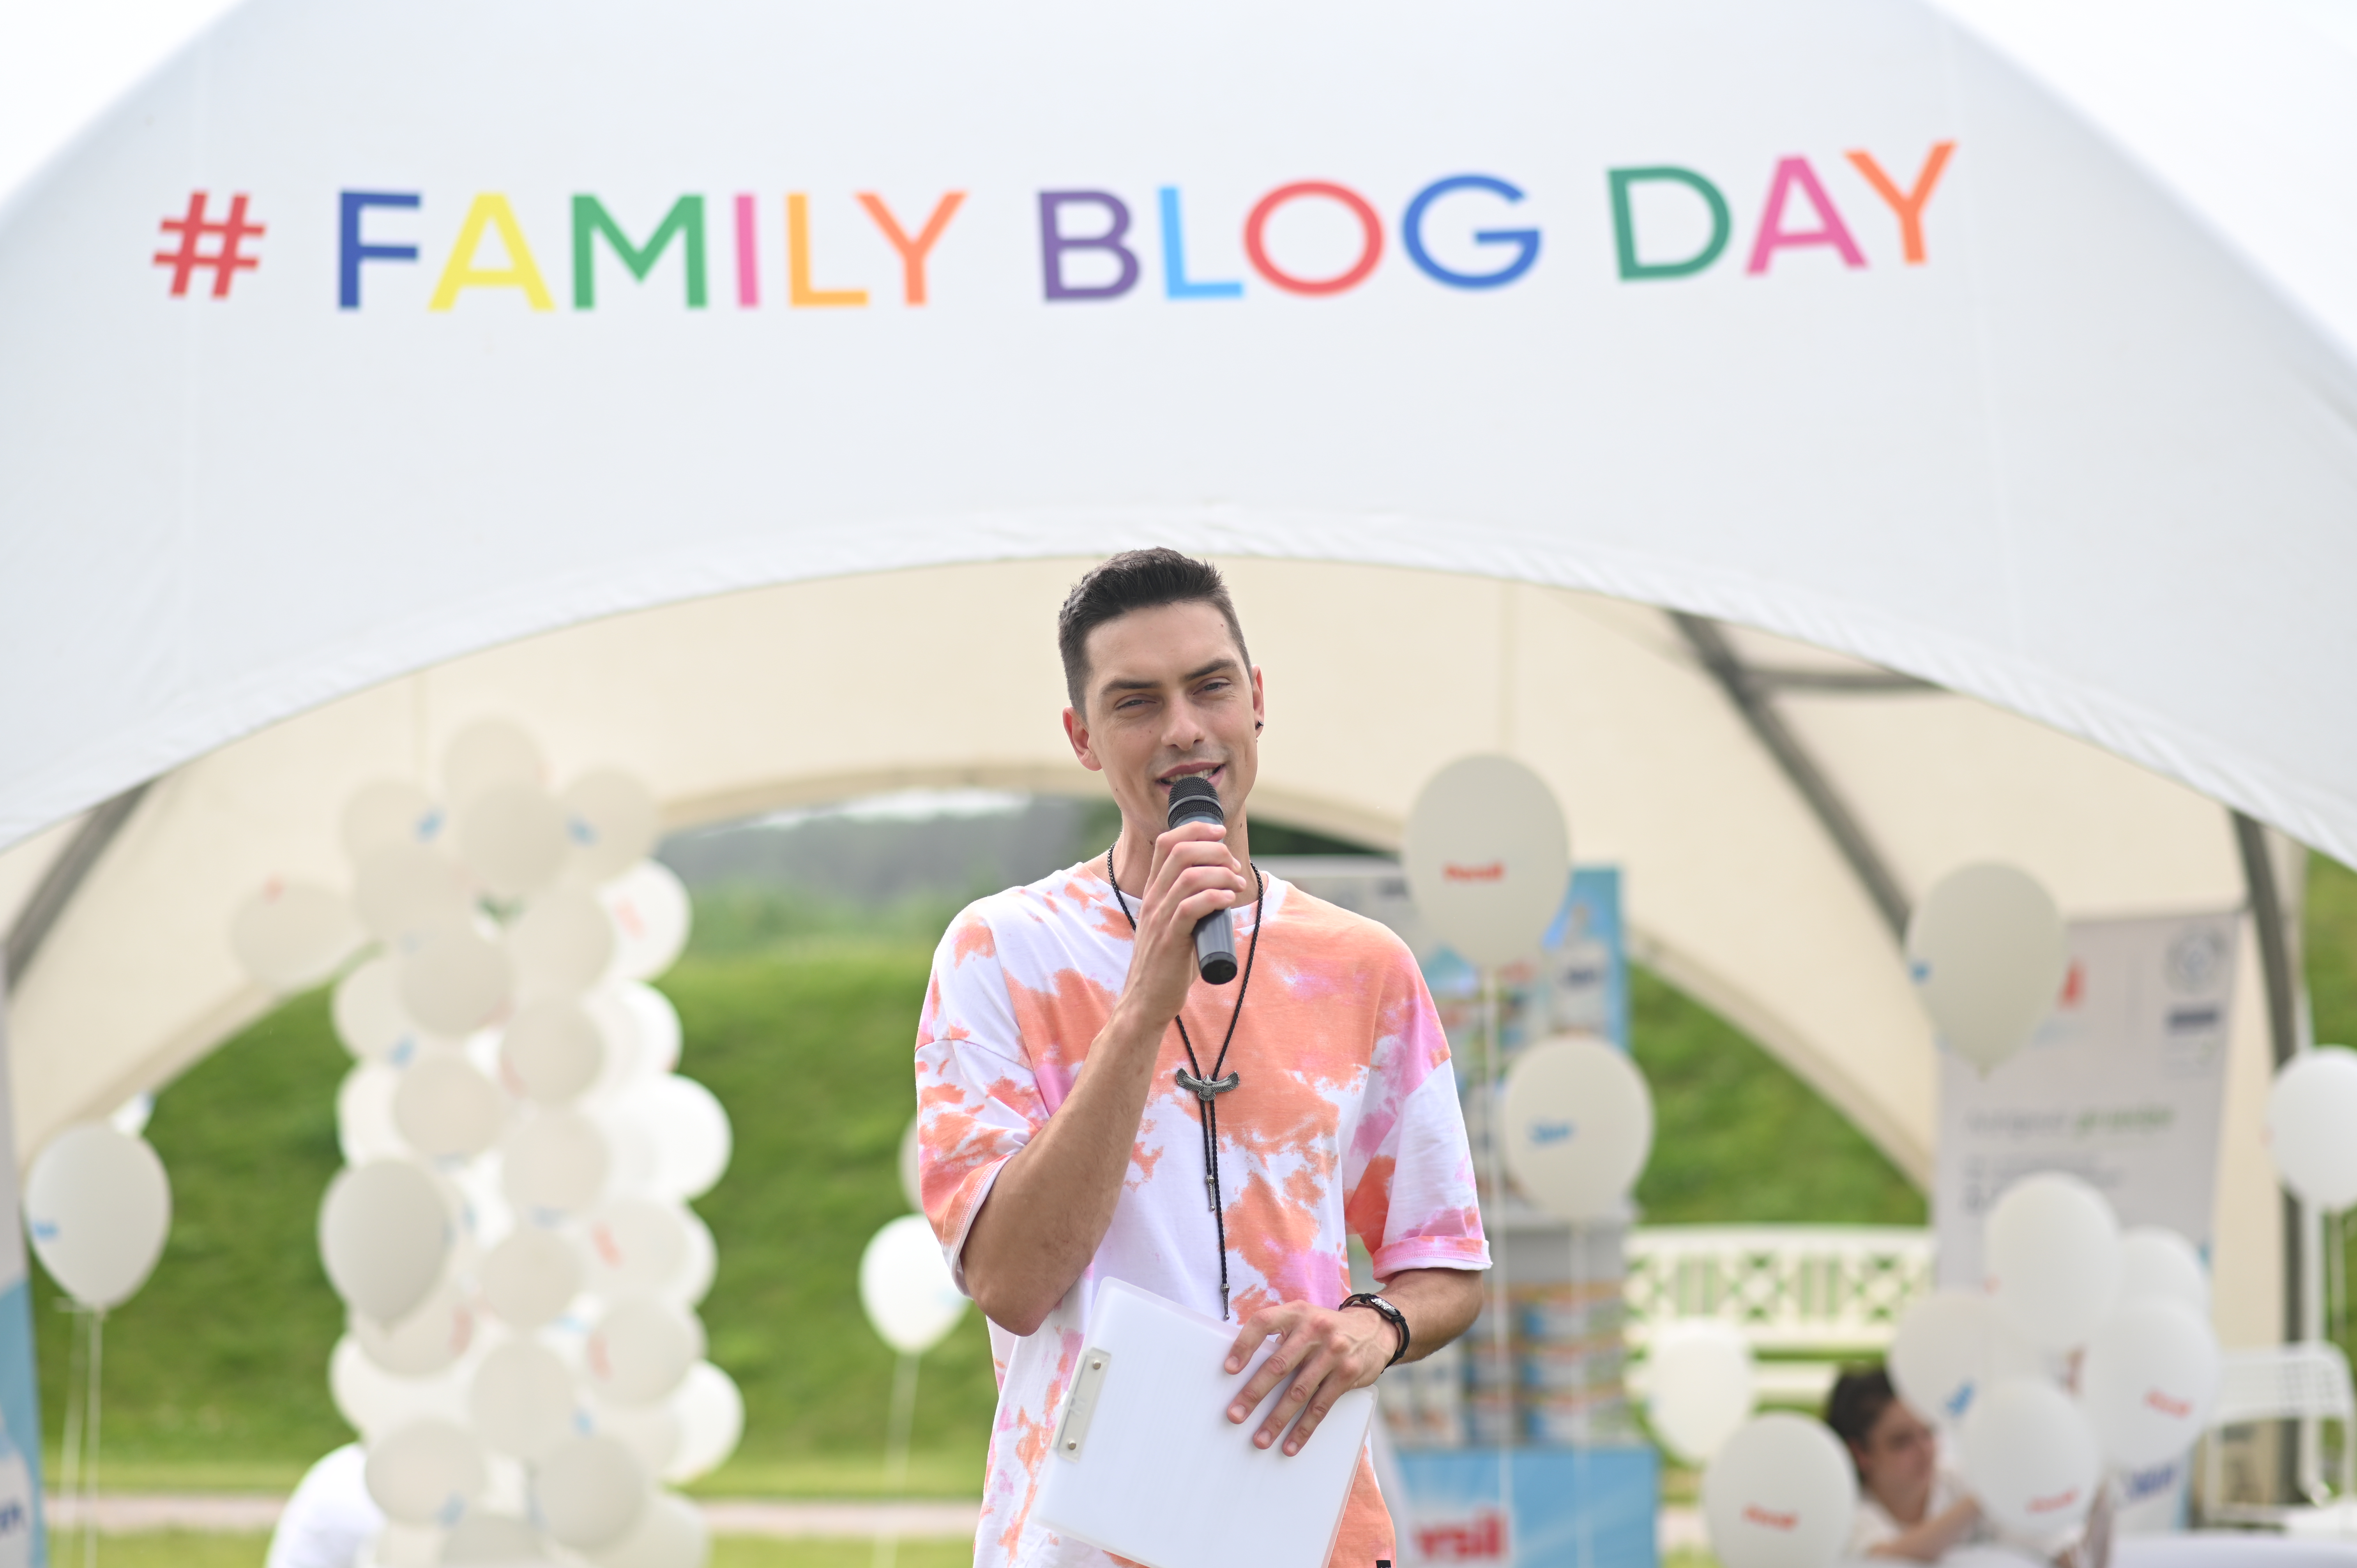 Як пройшло свято для мам-блогерів Family Blog Day